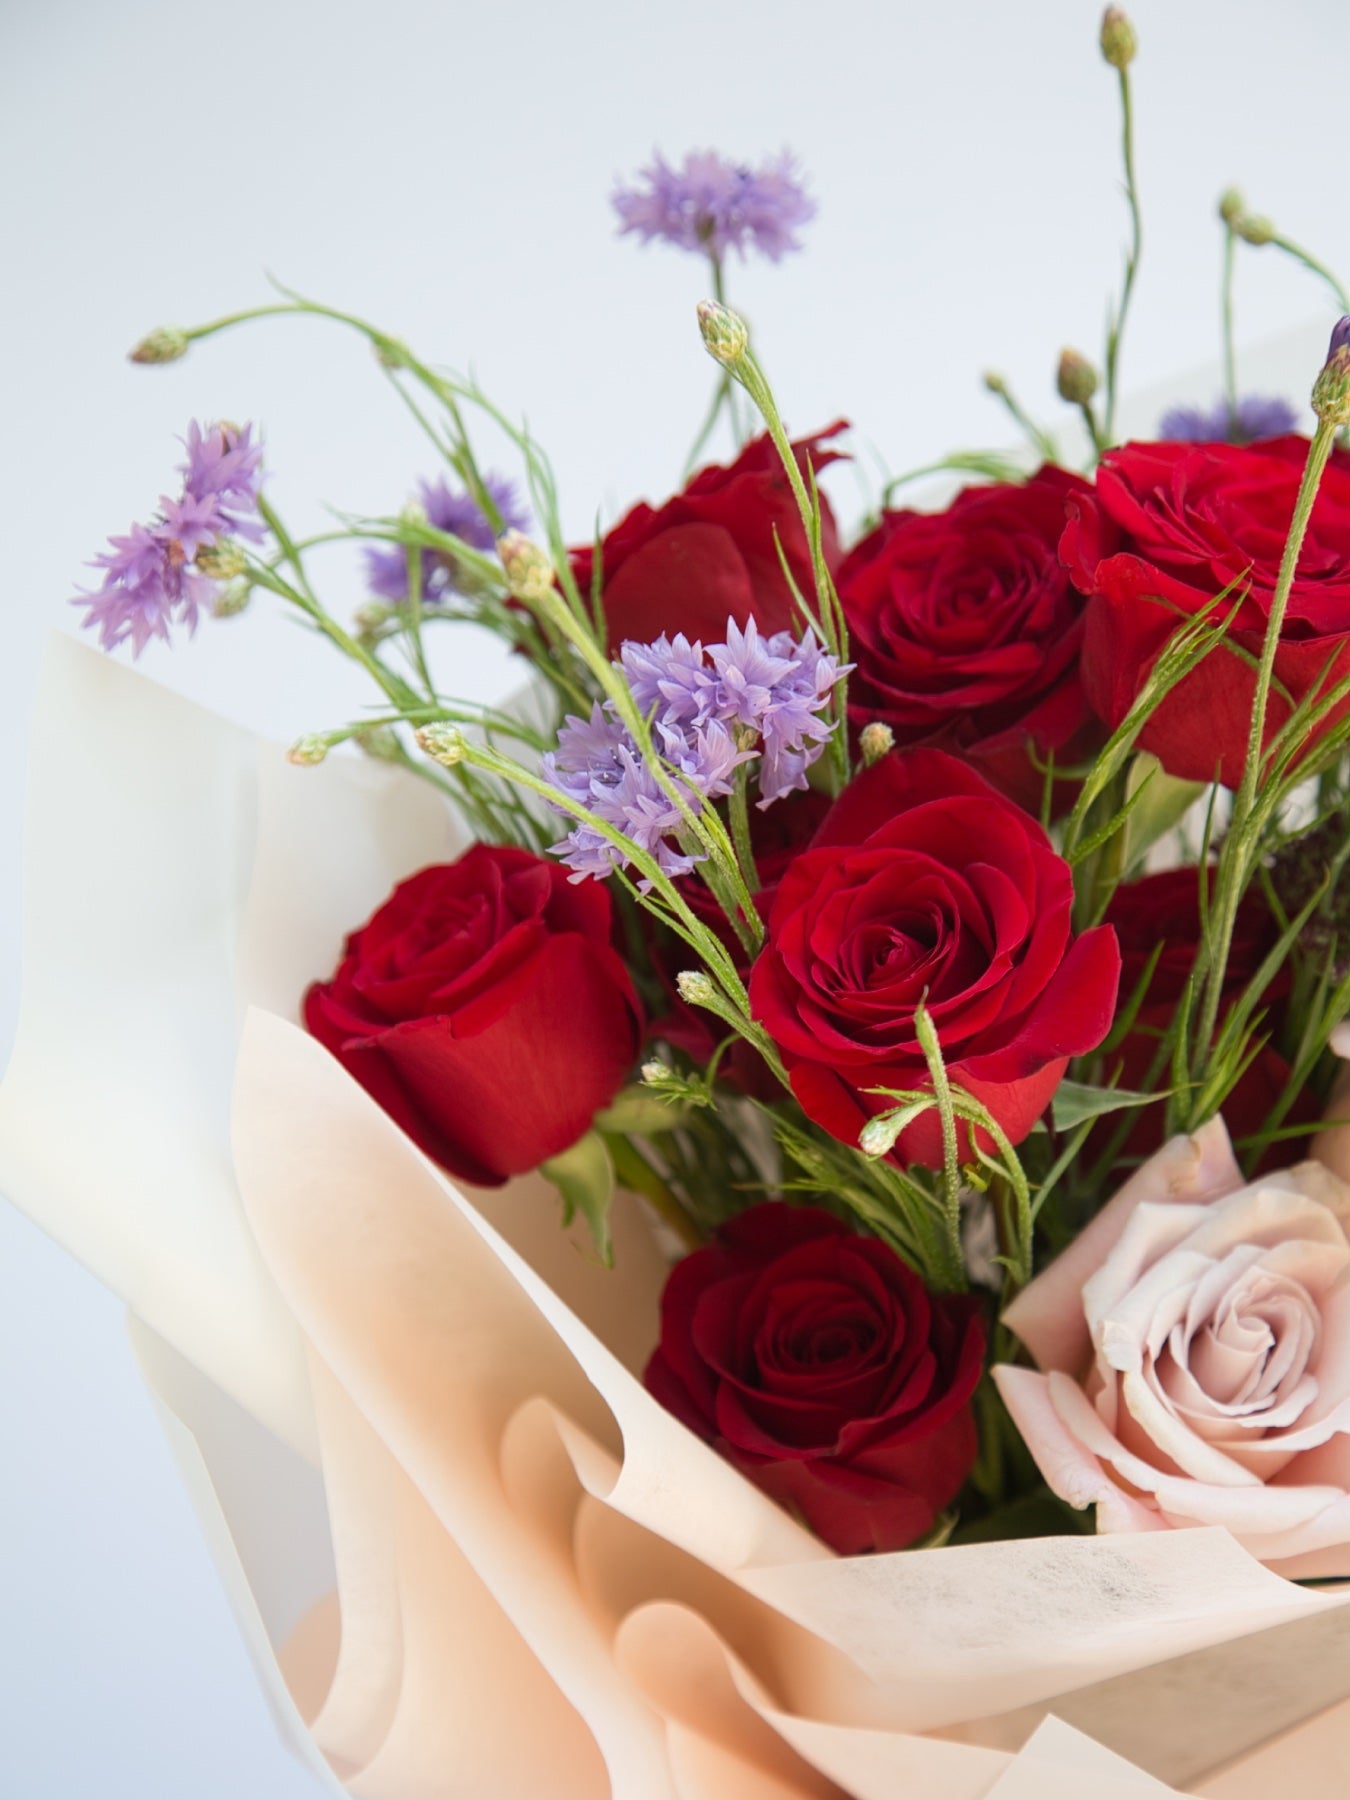 A Dozen Premium Rose Bouquet